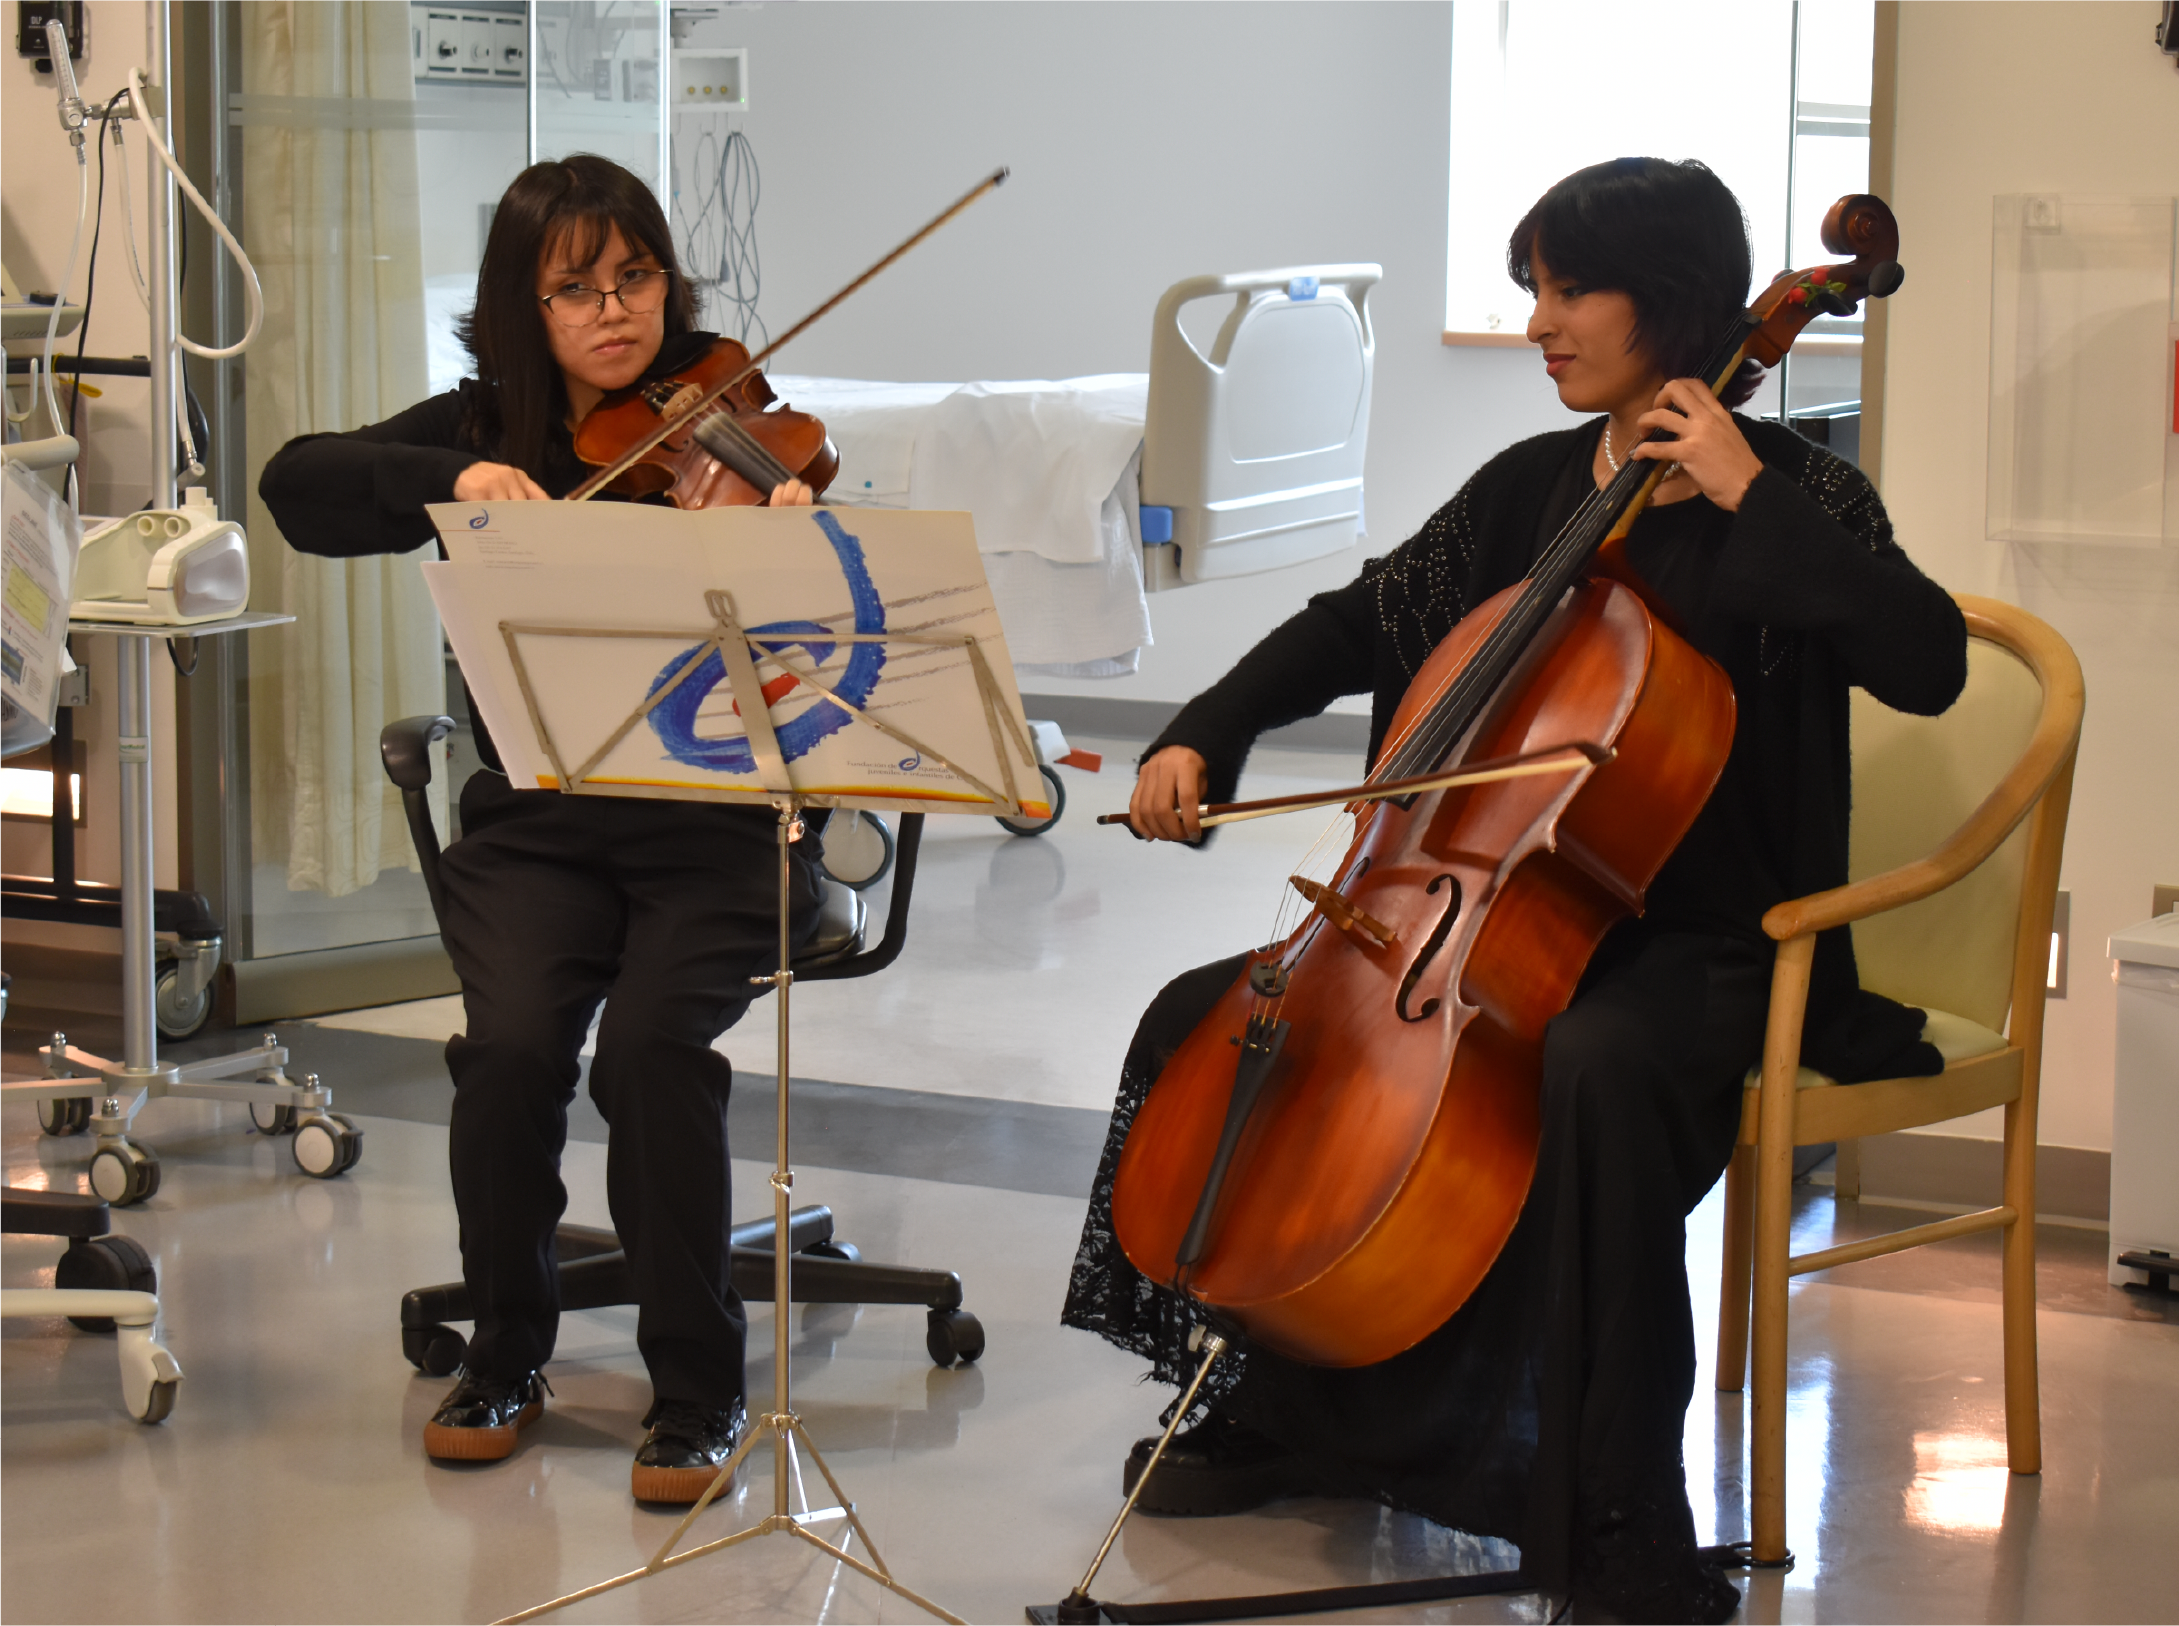 Sonidos que sanan: La música como terapia en hospitales